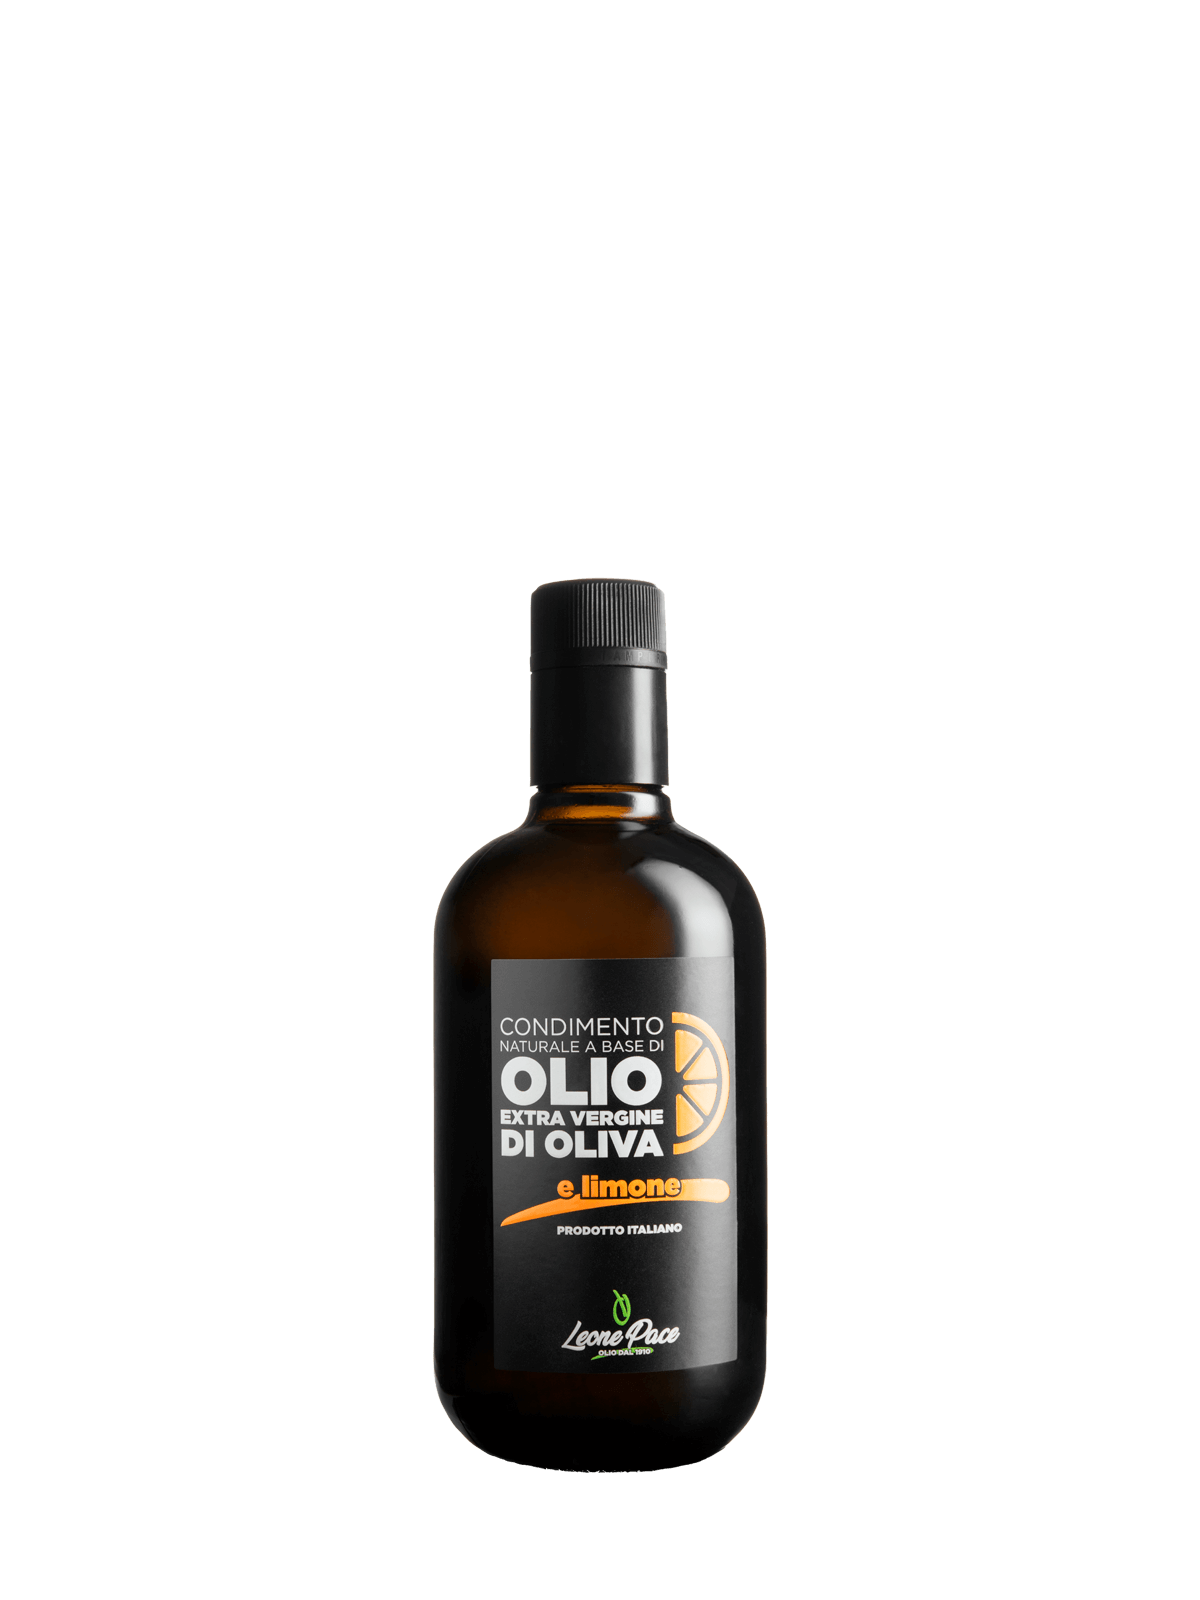 Condimento naturale a base di Olio EVO aromatizzato al limone - Prodotto a freddo - Bottiglia vetro 0,5L